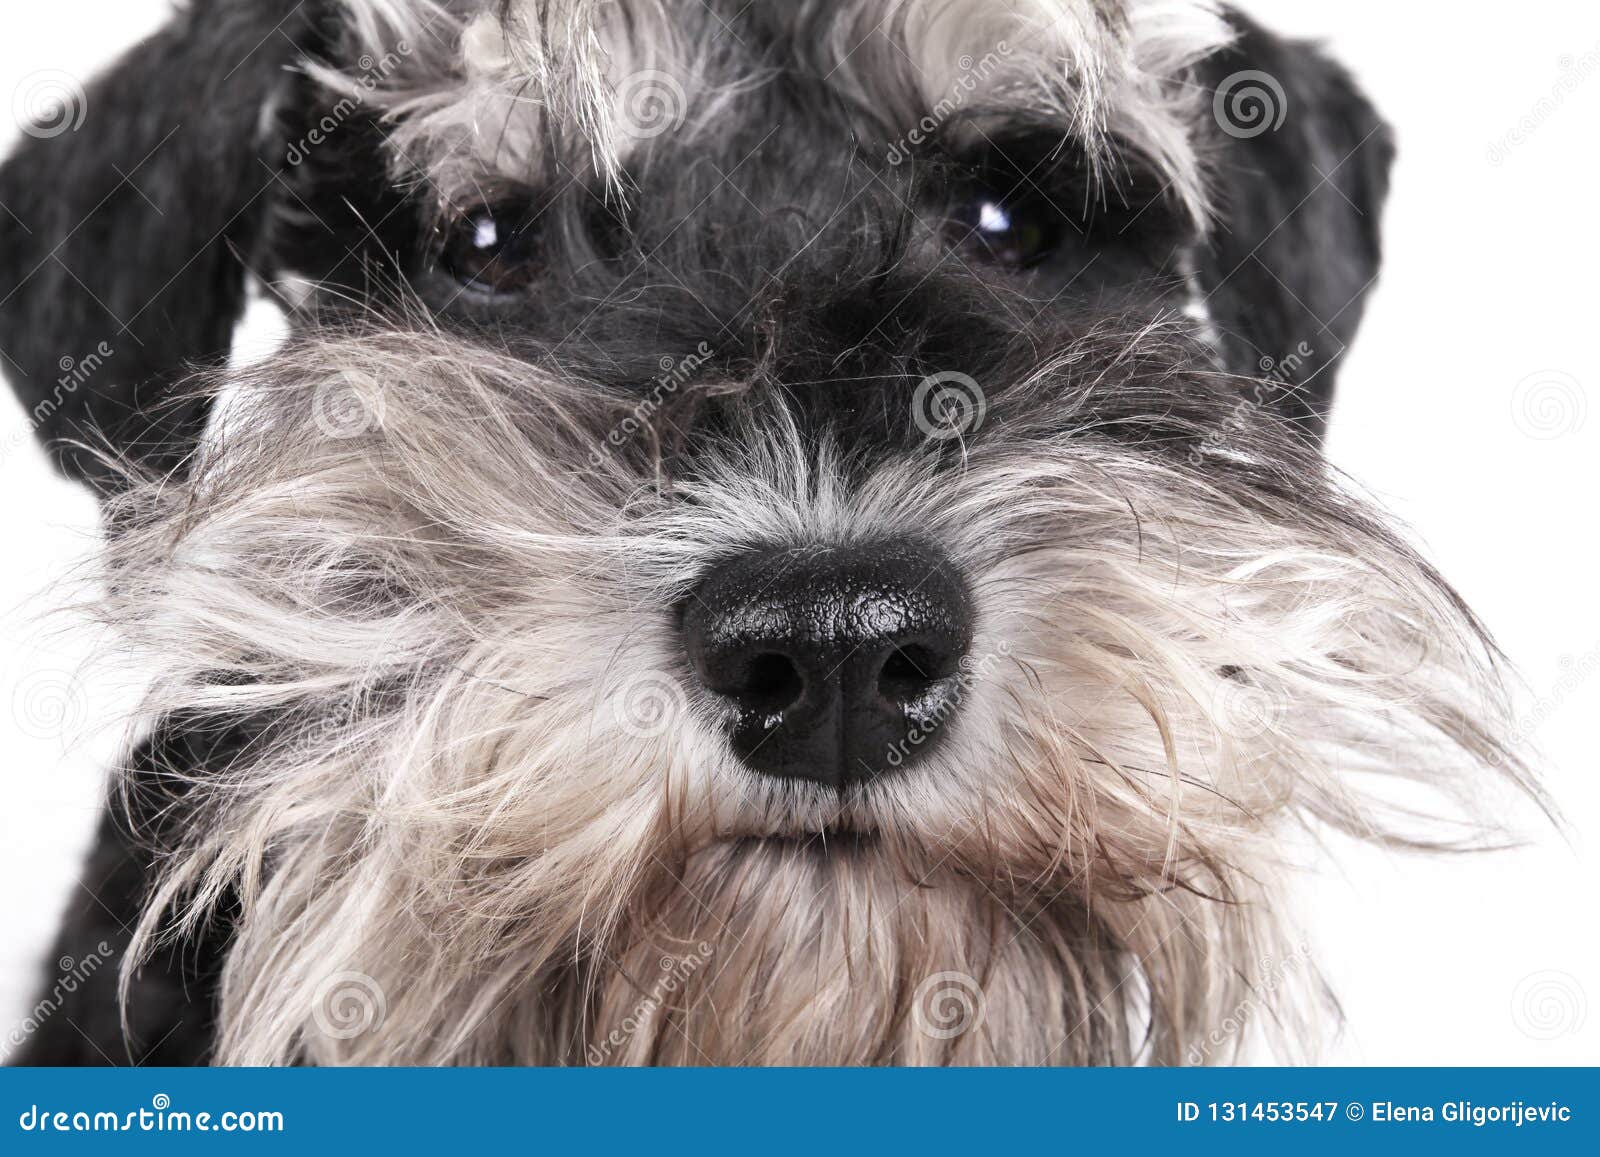 Miniature Schnauzer Puppy Dog On White Background Stock Image Image Of Background Breed 131453547